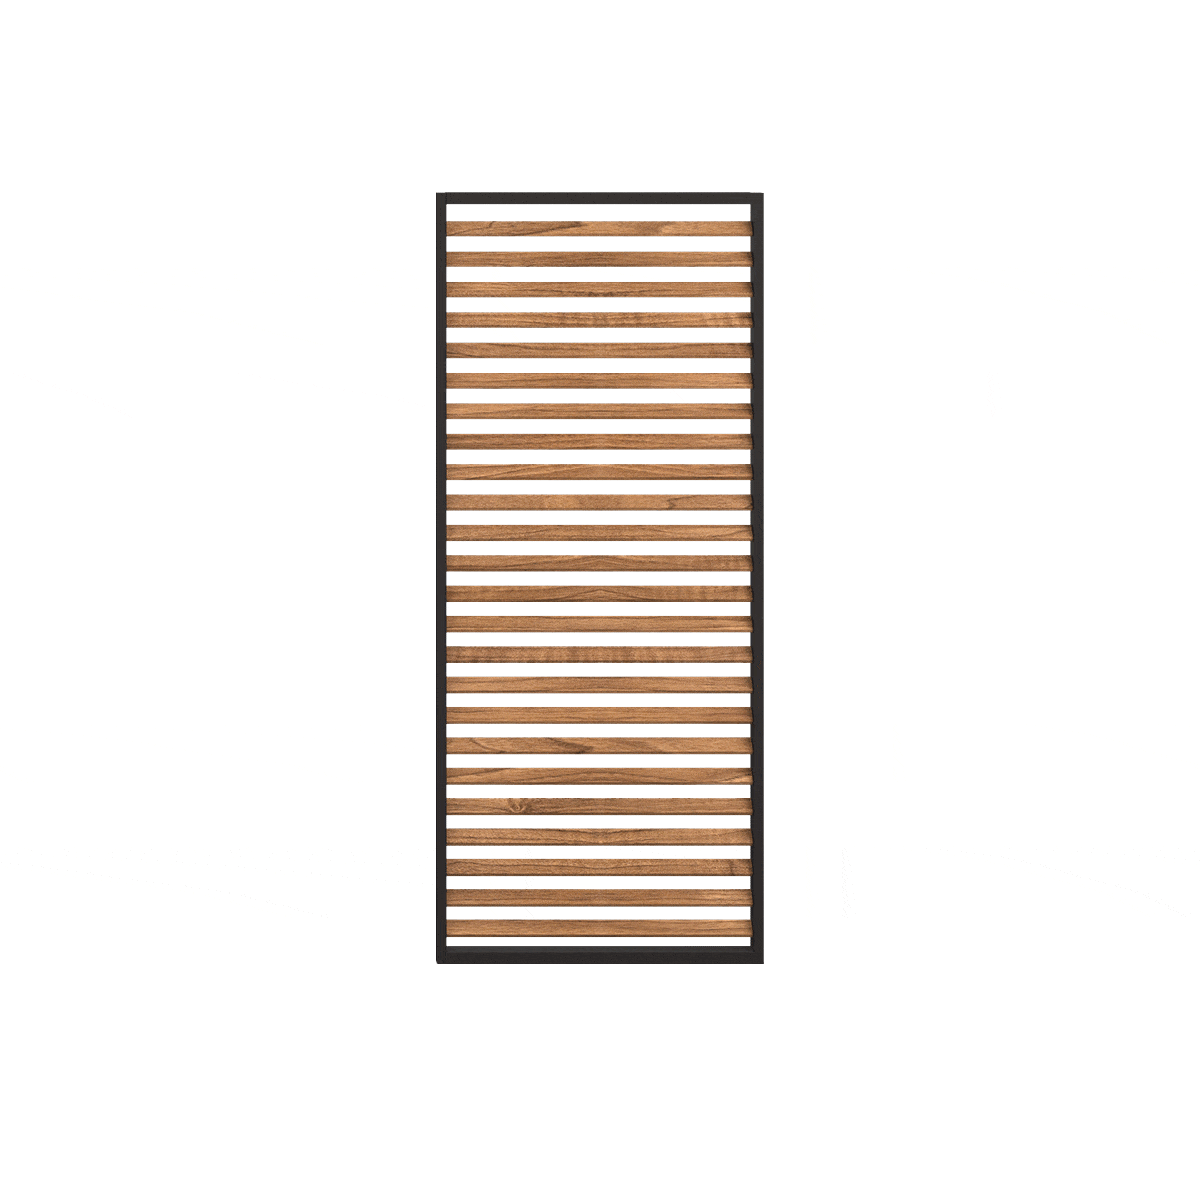 Maze Outdoors Pergola Aluminium Louvre Wood Effect Panel 123x218 / Grey frame & middle beam House of Isabella UK